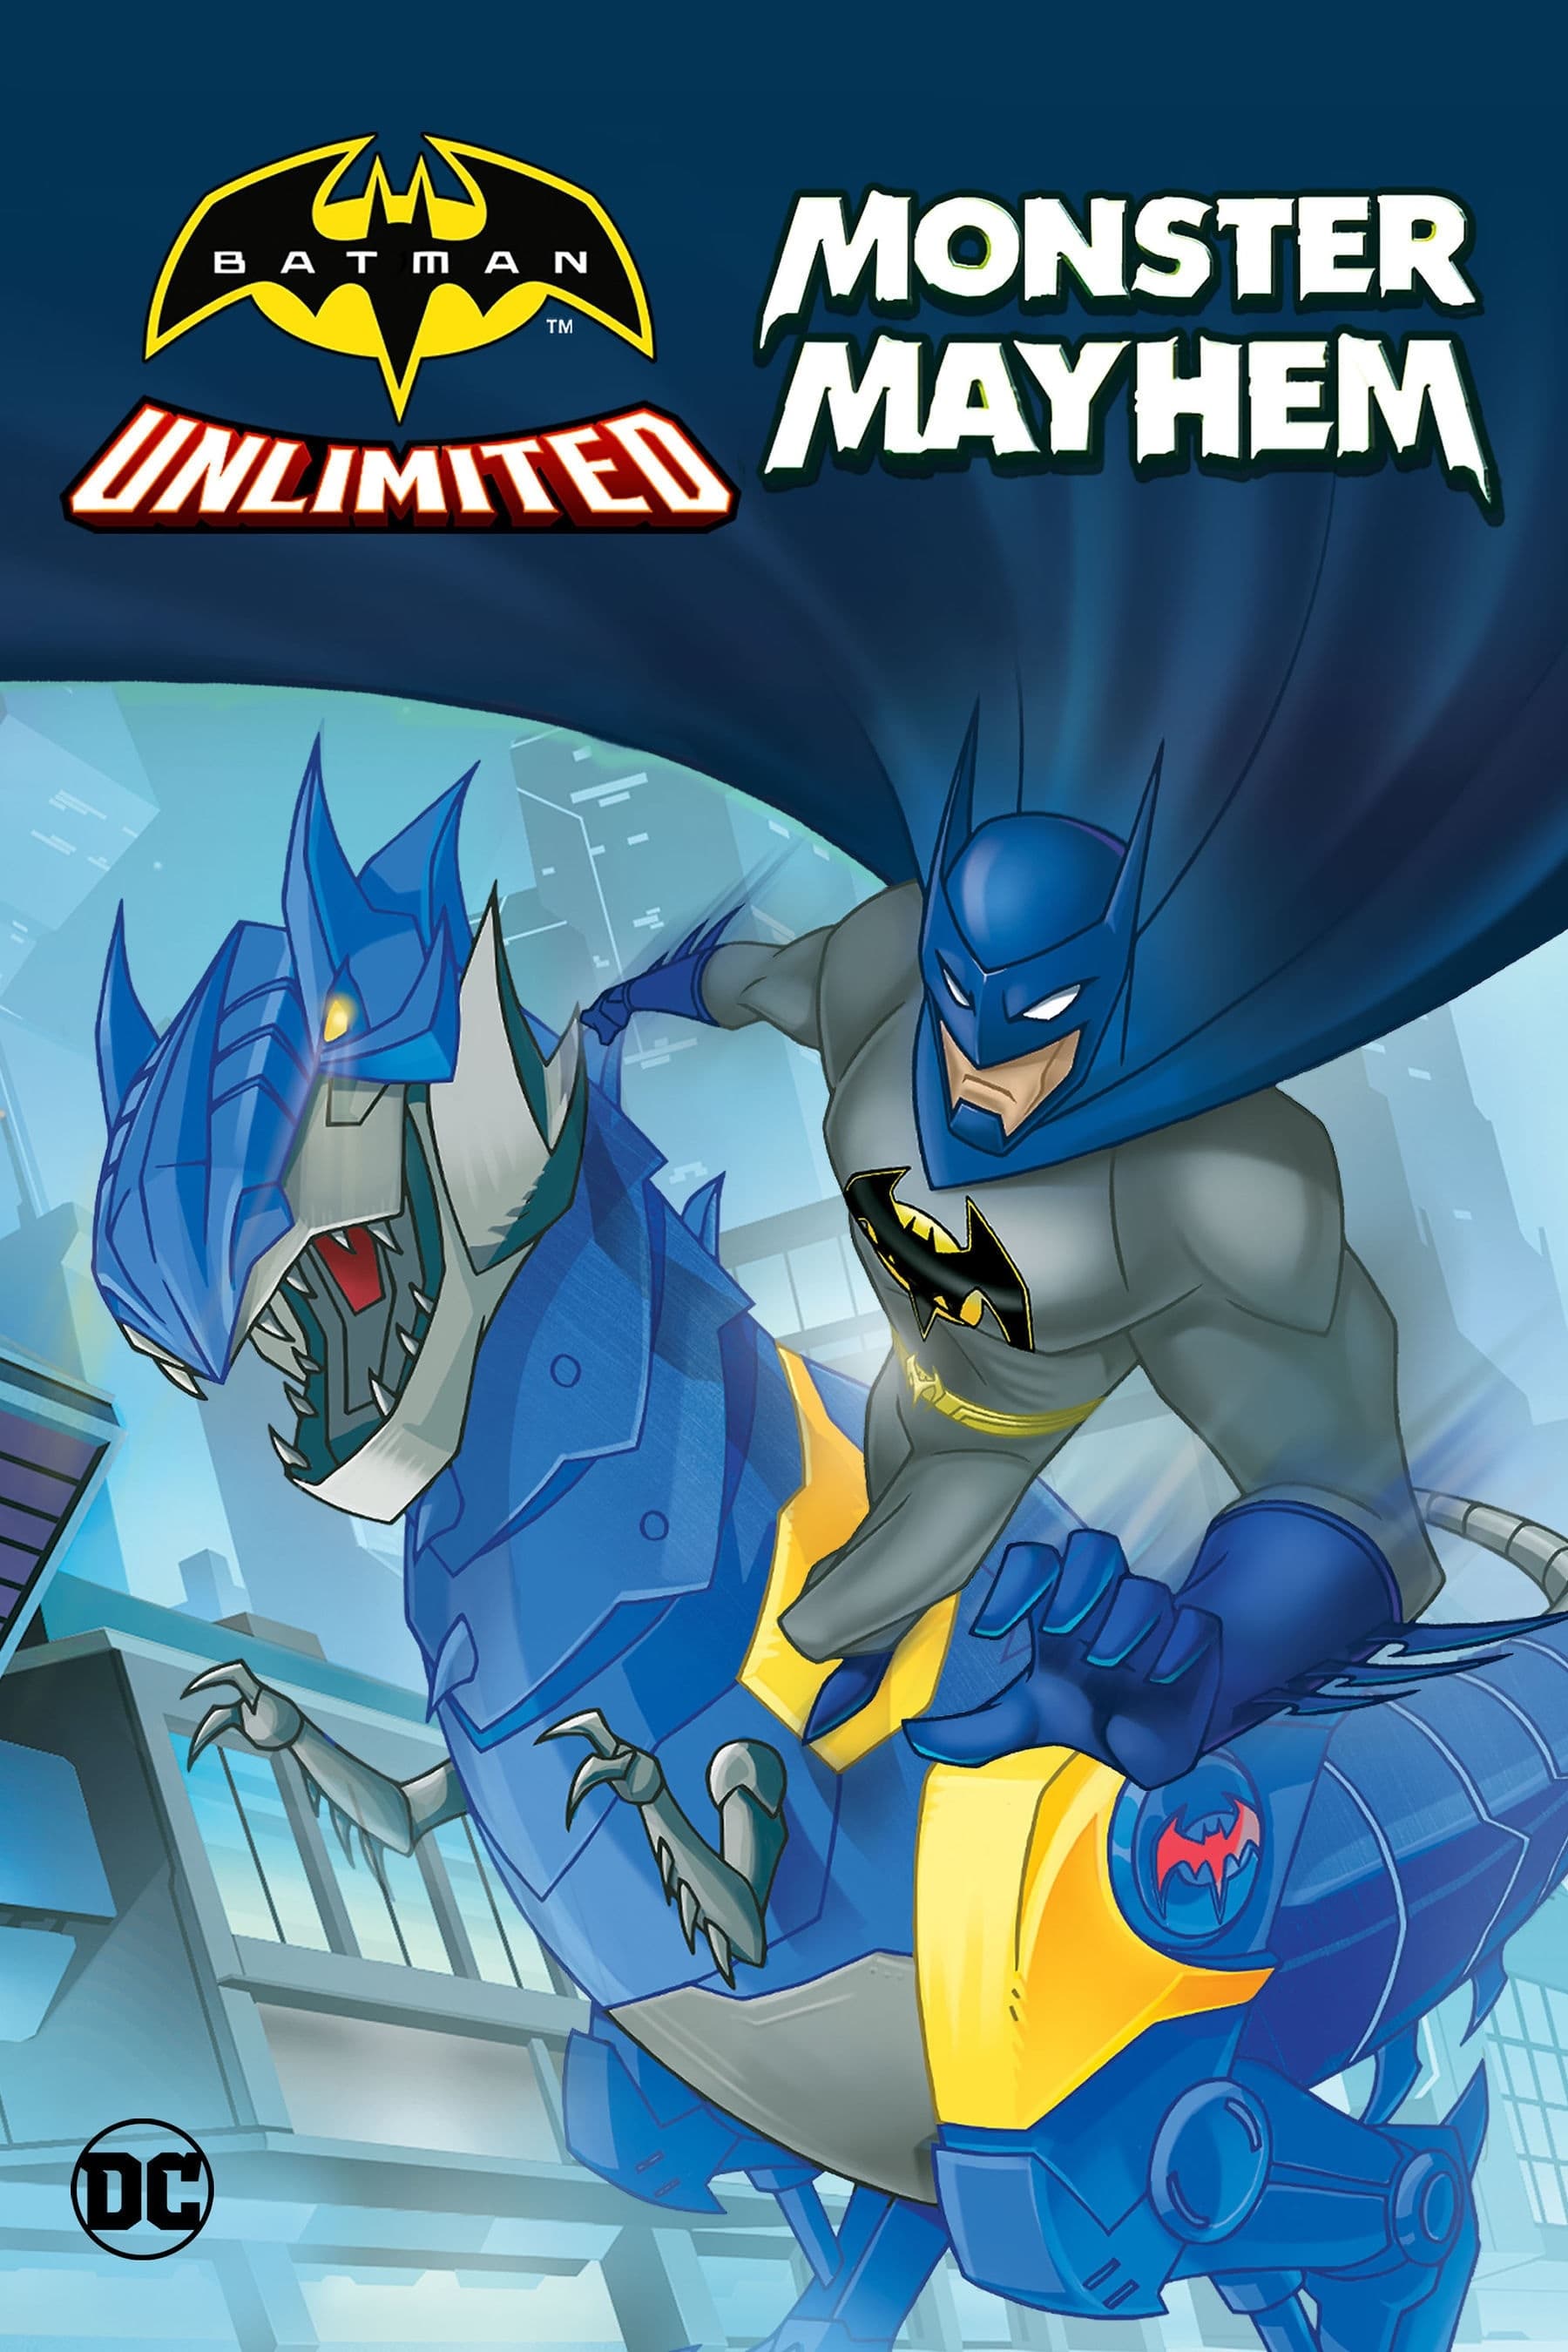 EN - Batman Unlimited Monster Mayhem (2015)